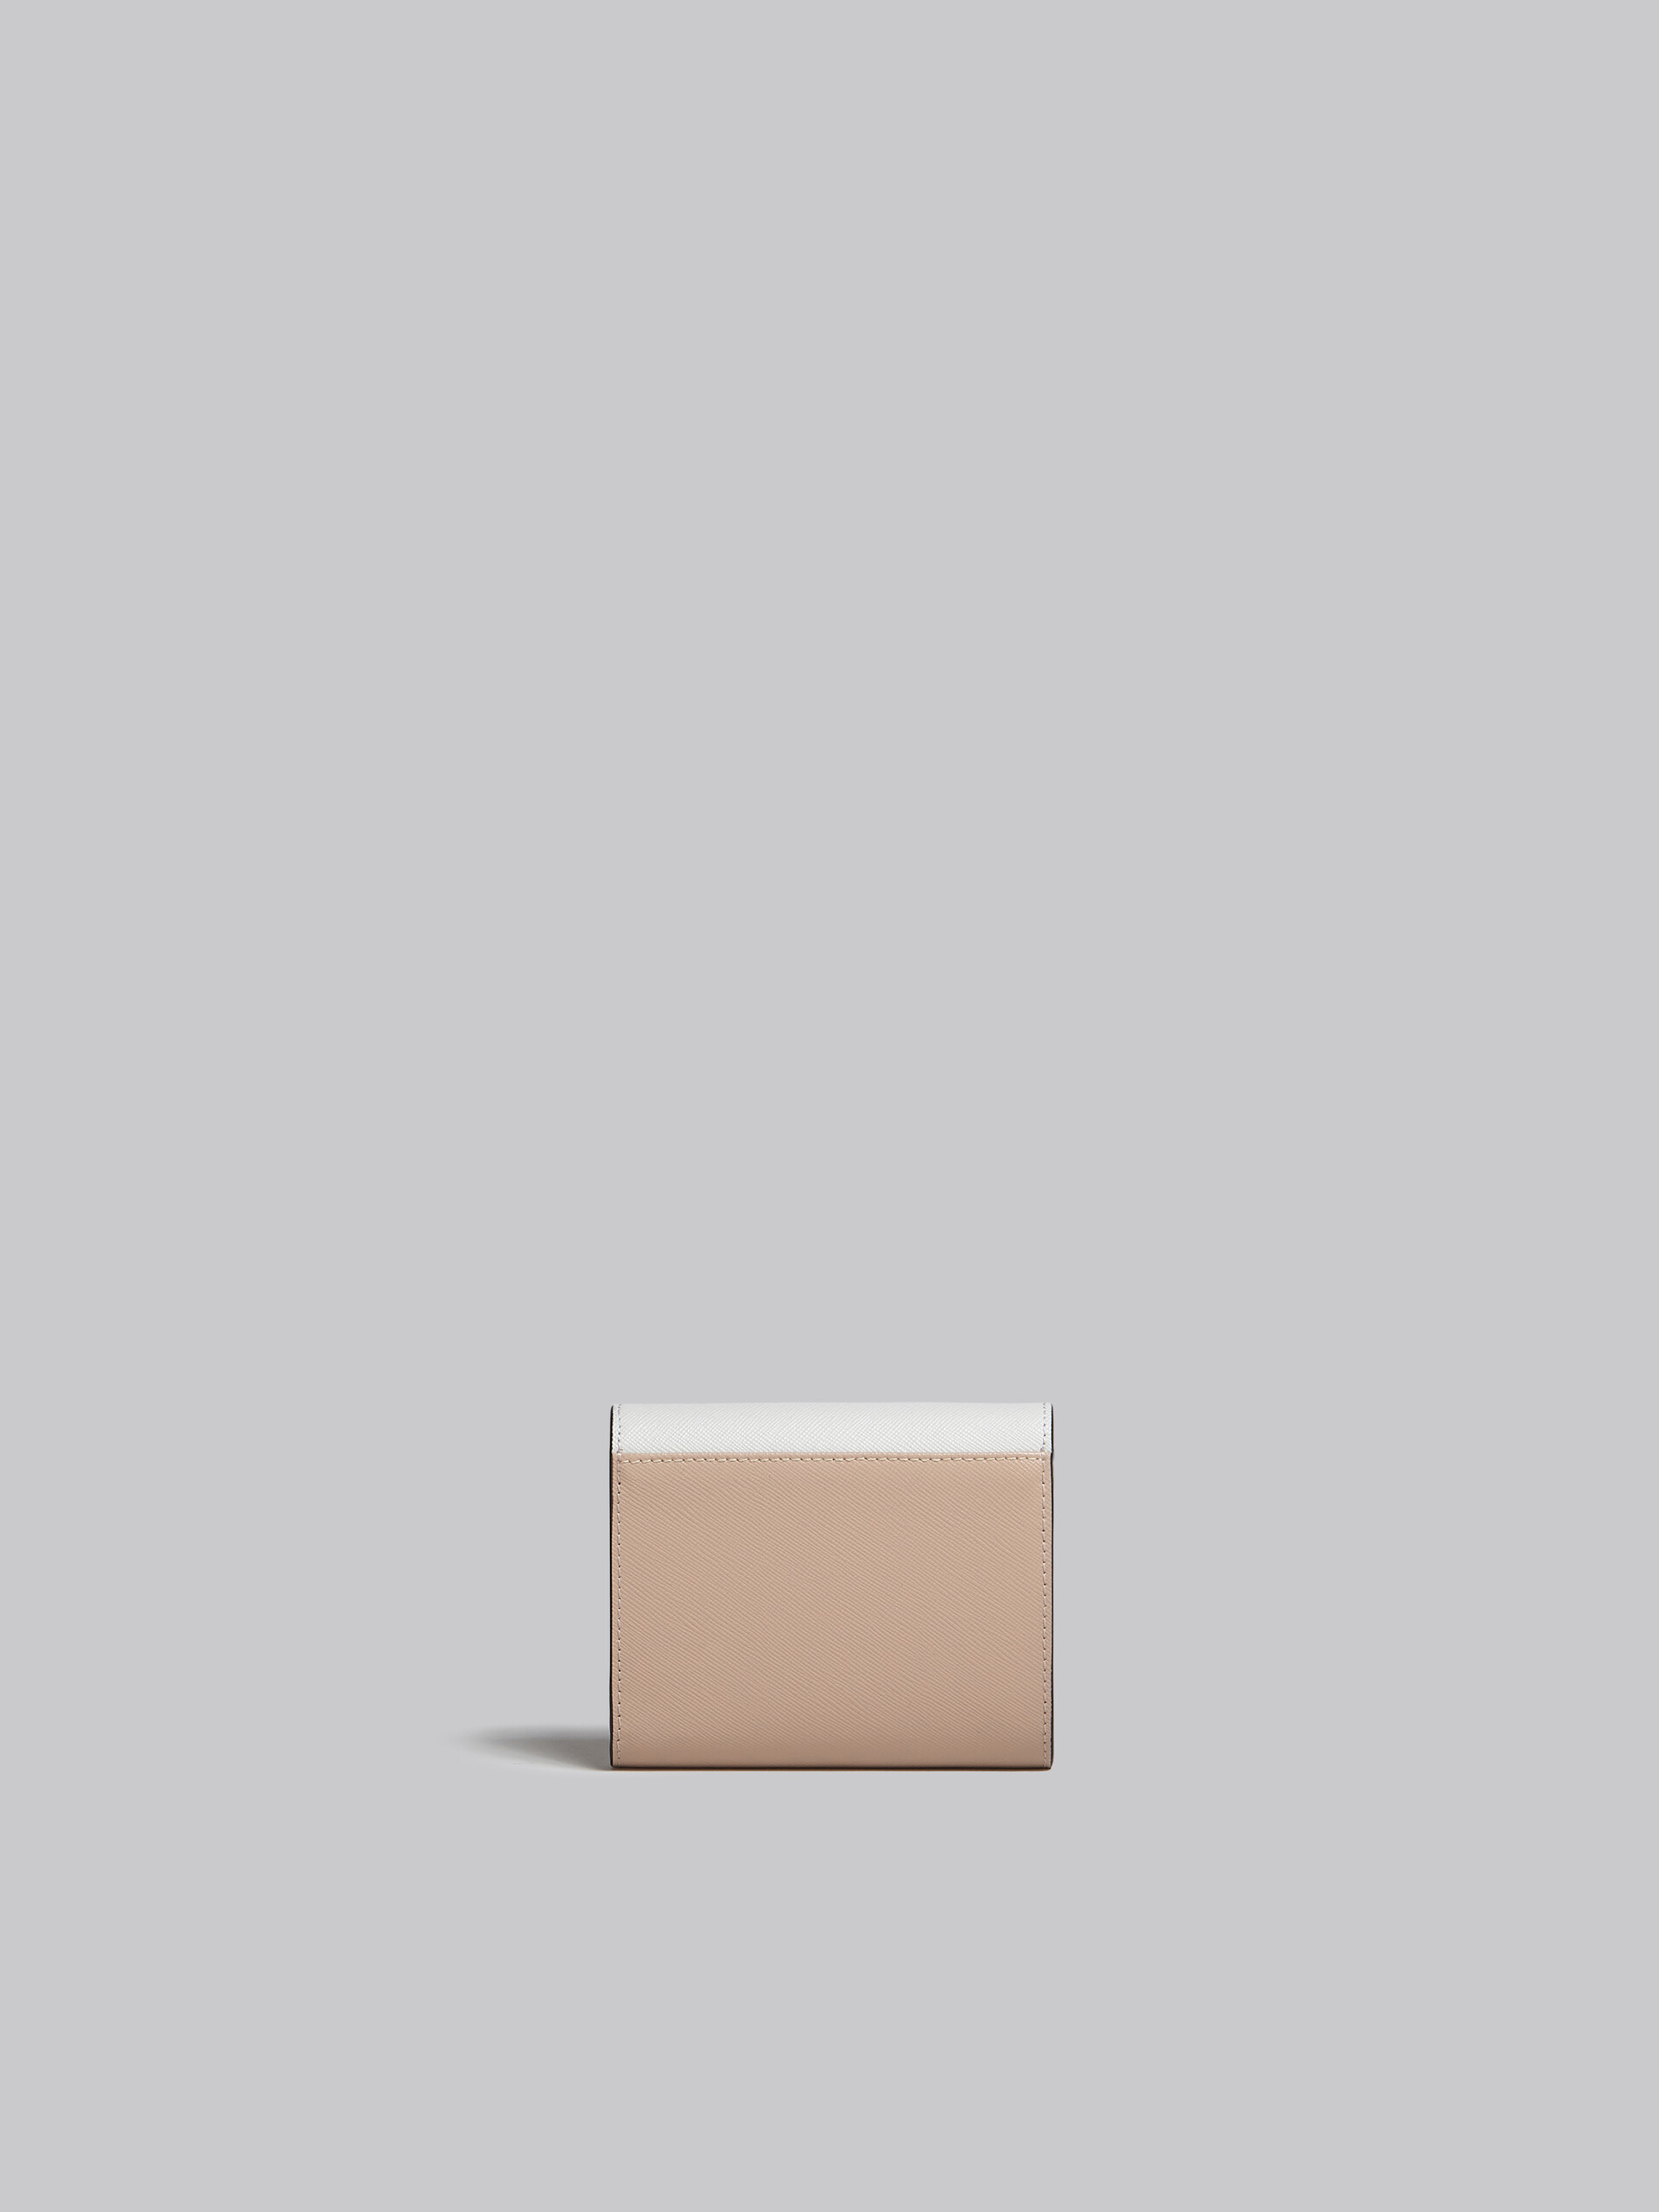 Portemonnaie aus Saffiano-Leder in Hellgrün, Weiß und Braun - Brieftaschen - Image 3